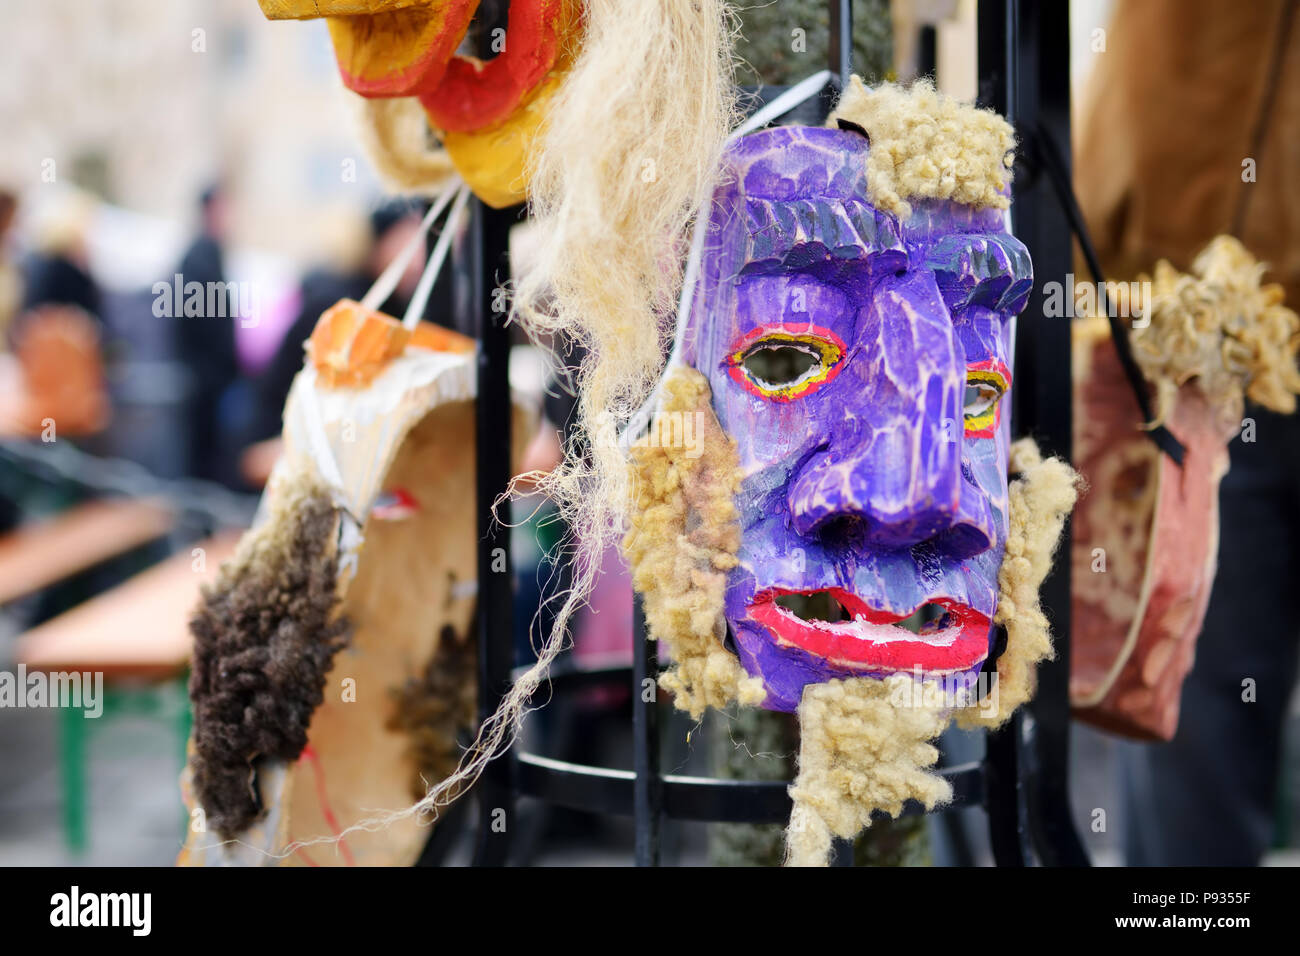 Legno usurata maks per celebrare Uzgavenes, un annuale lituano folk festival si svolge in sette settimane prima di Pasqua. Foto Stock